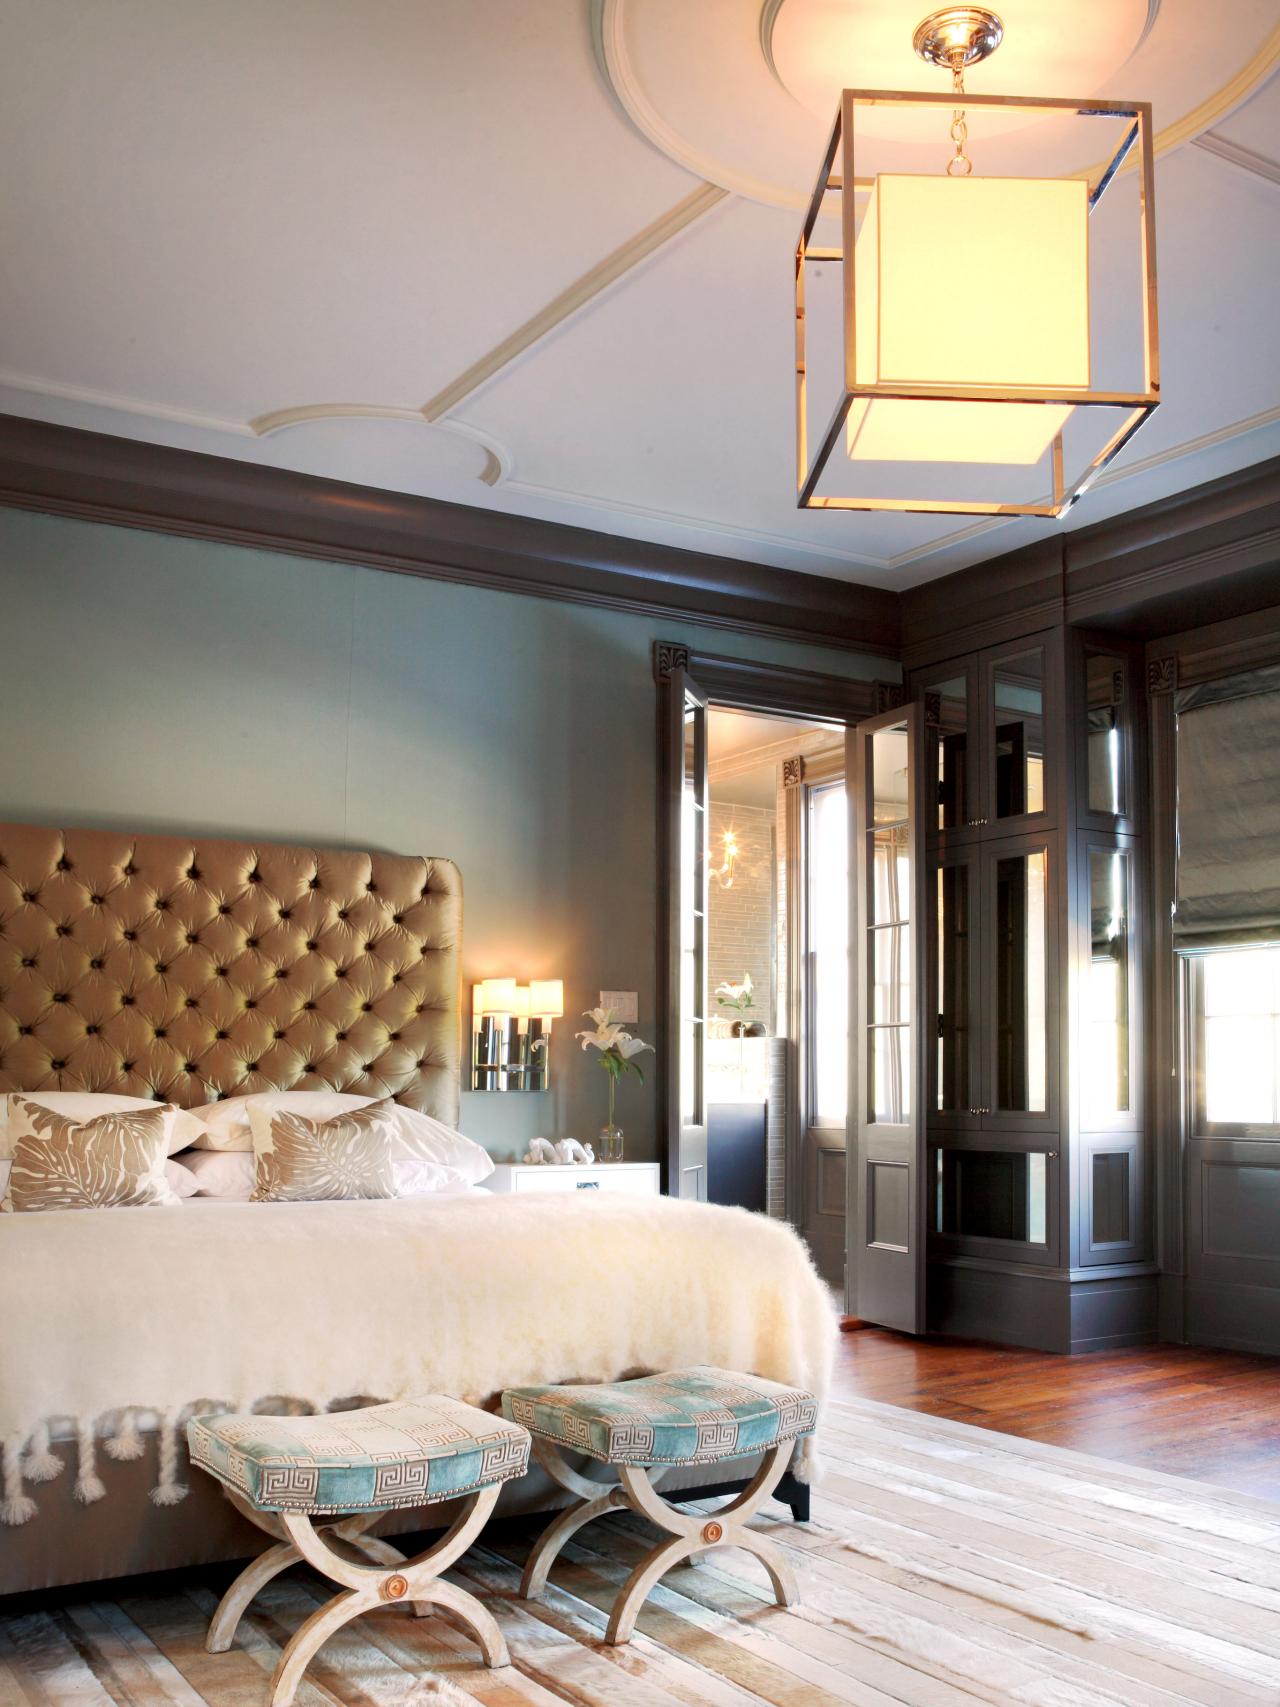 10 Romantic Bedrooms We Love | Bedrooms & Bedroom Decorating Ideas ...